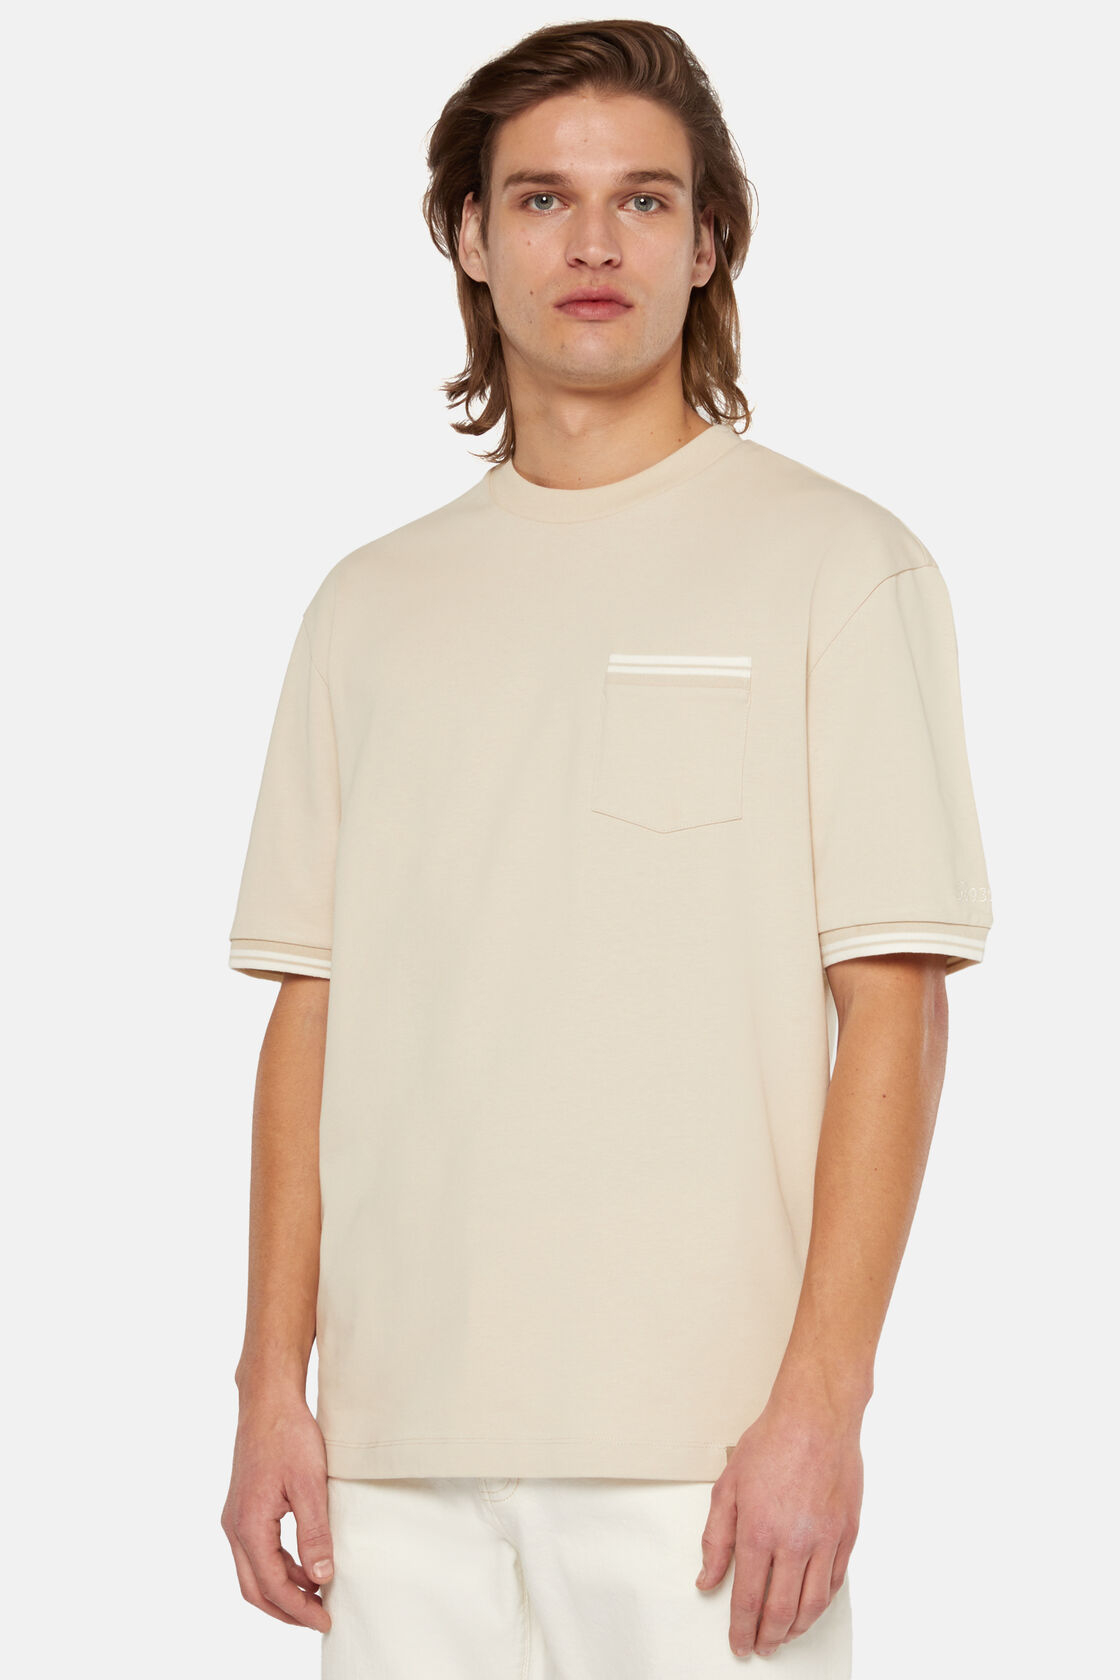 T-Shirt Mistura de Algodão Orgânico, Sand, hi-res